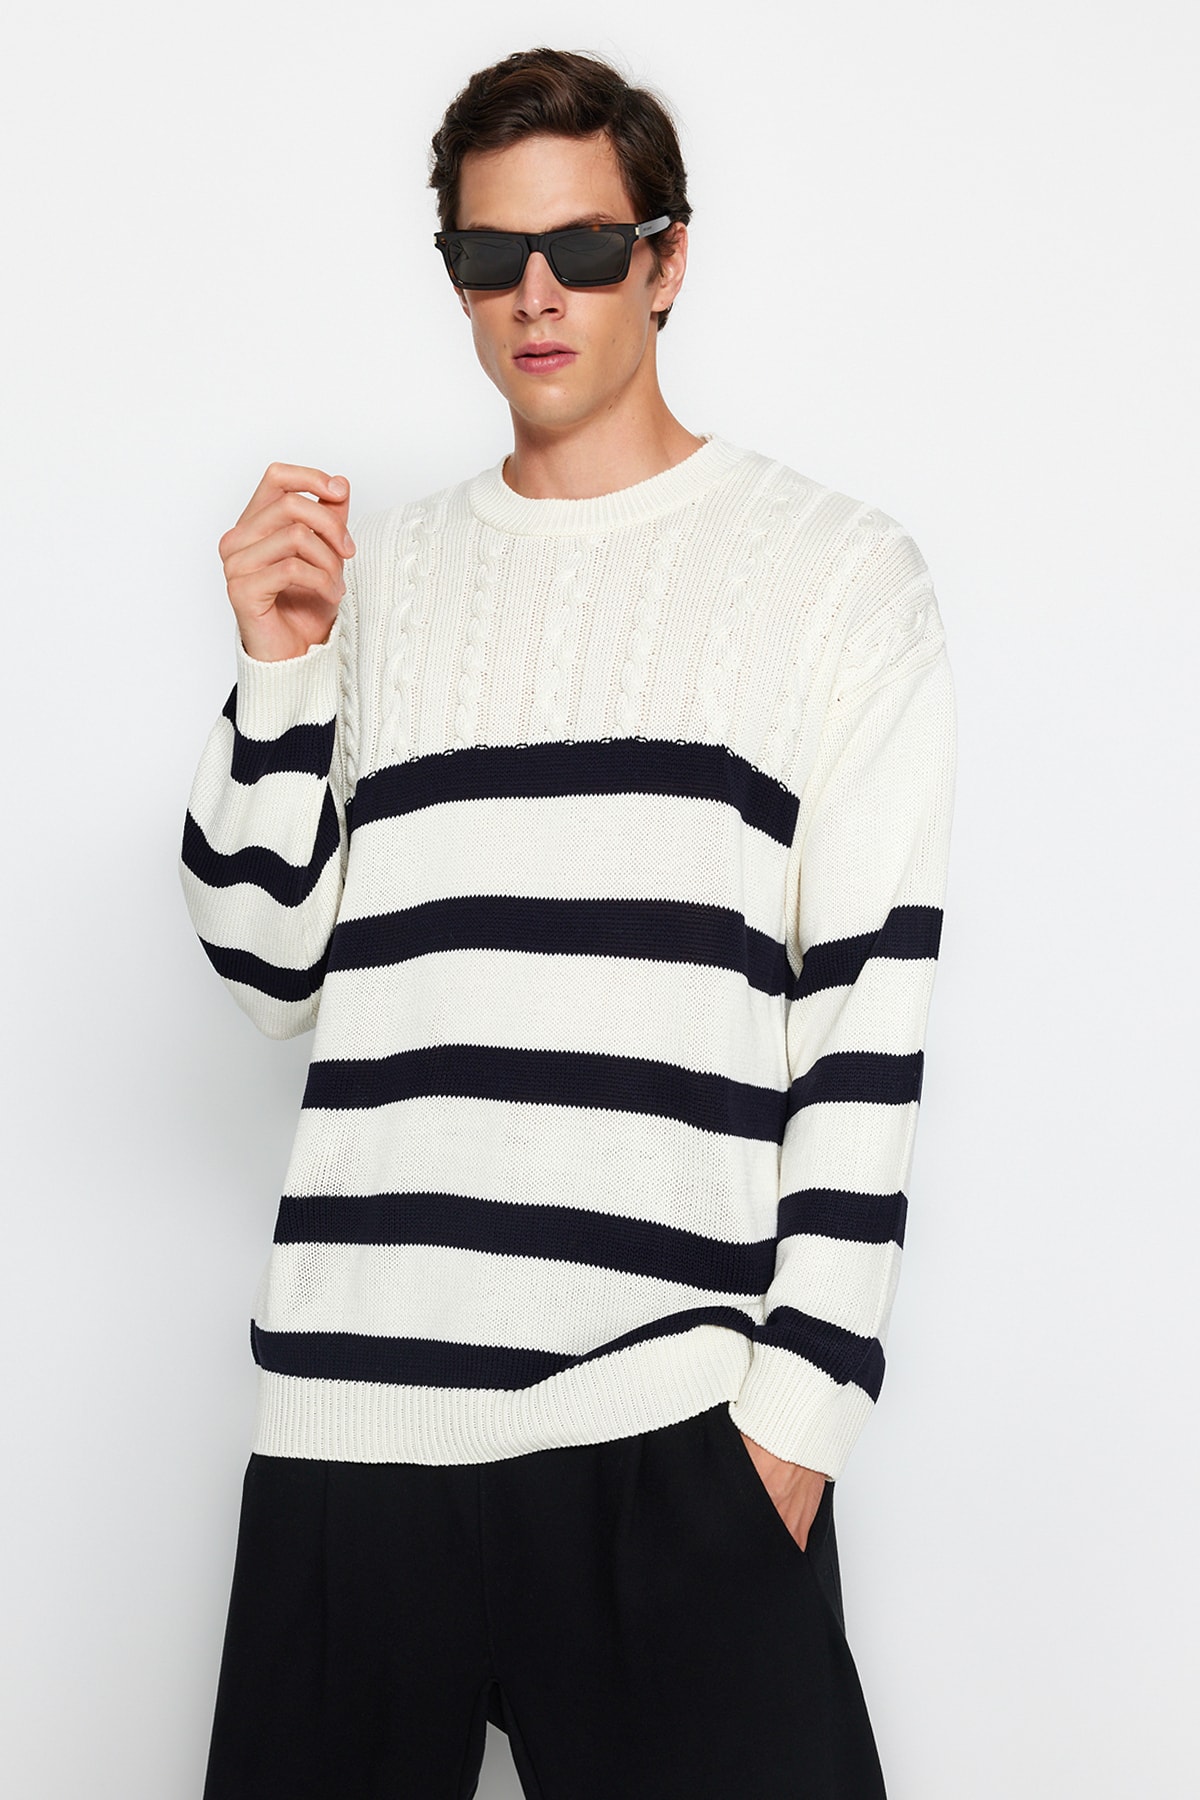 Trendyol Ecru Unisex Oversize Fit Wide Fit Hair Knitted Striped Anti-Pilling Knitwear Sweater.